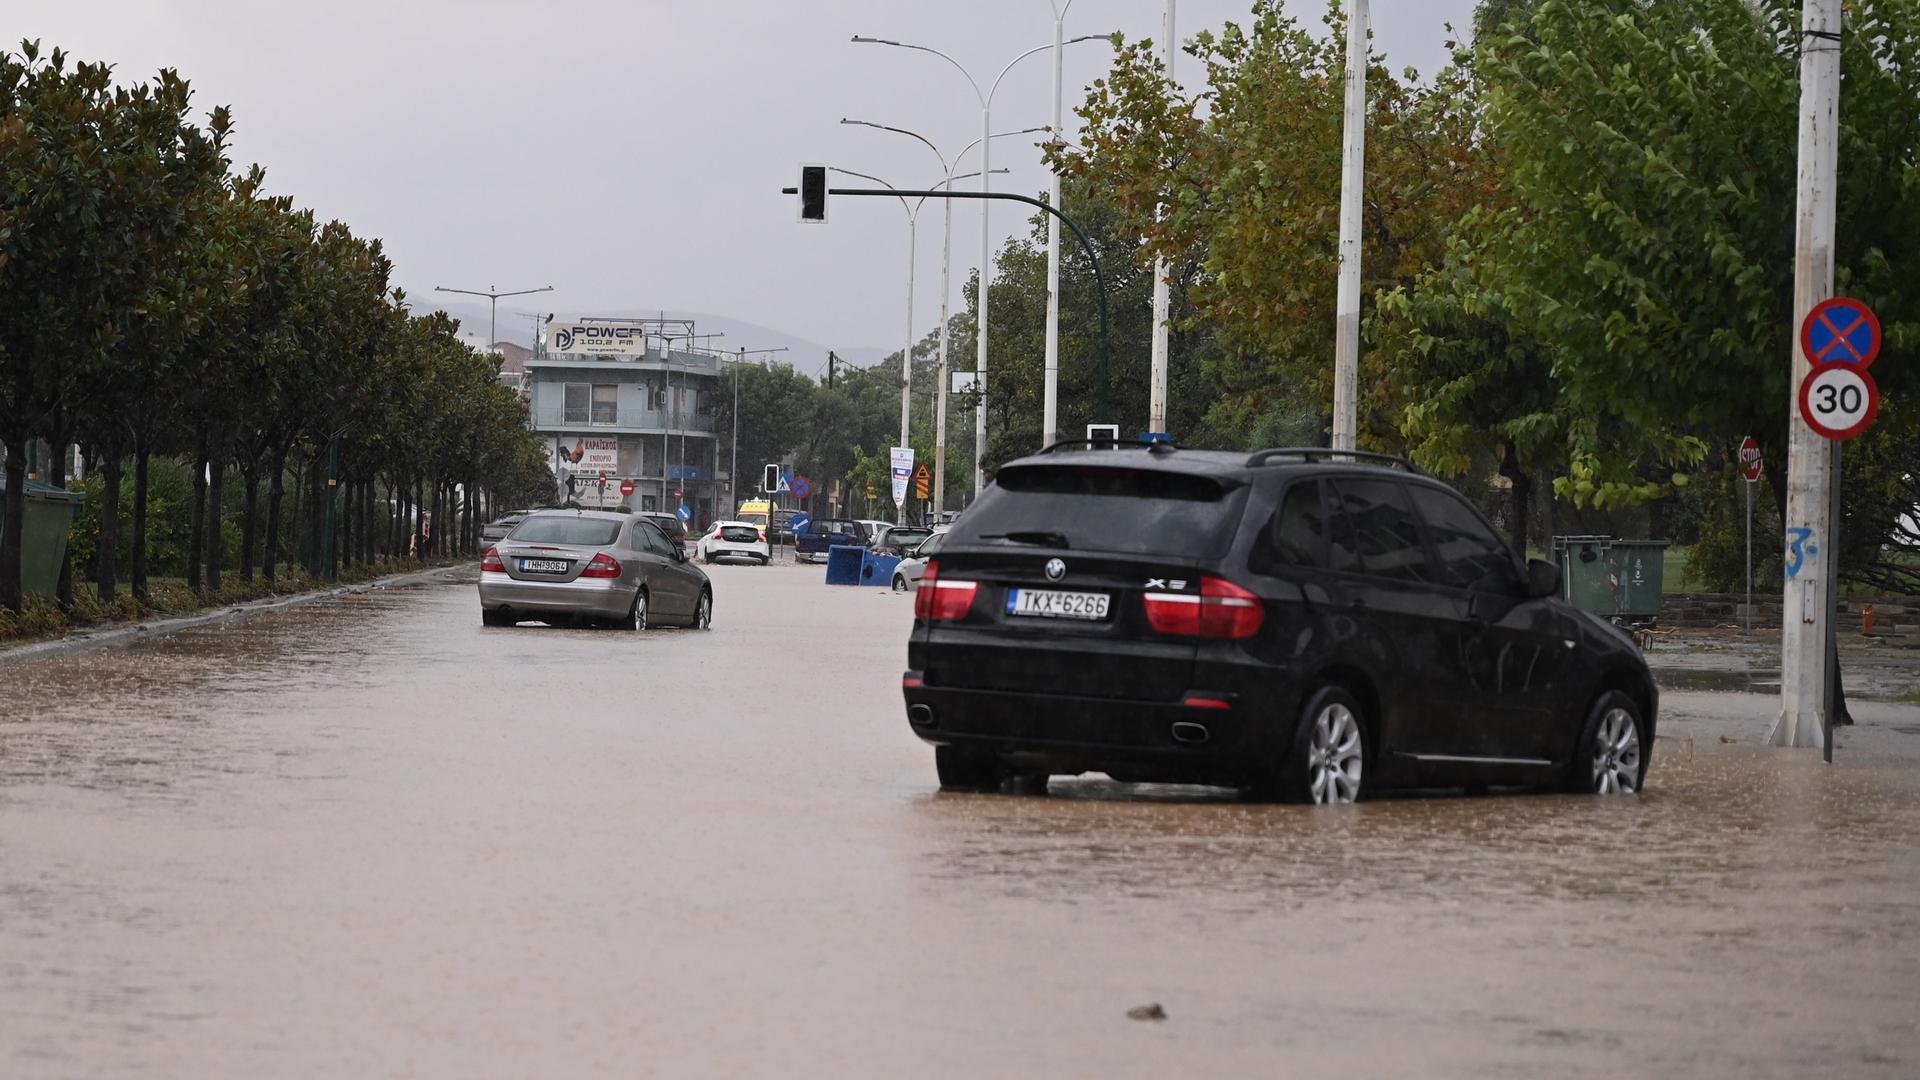 Überflutete Straße in Griechenland, mehrere Autos in den Fluten